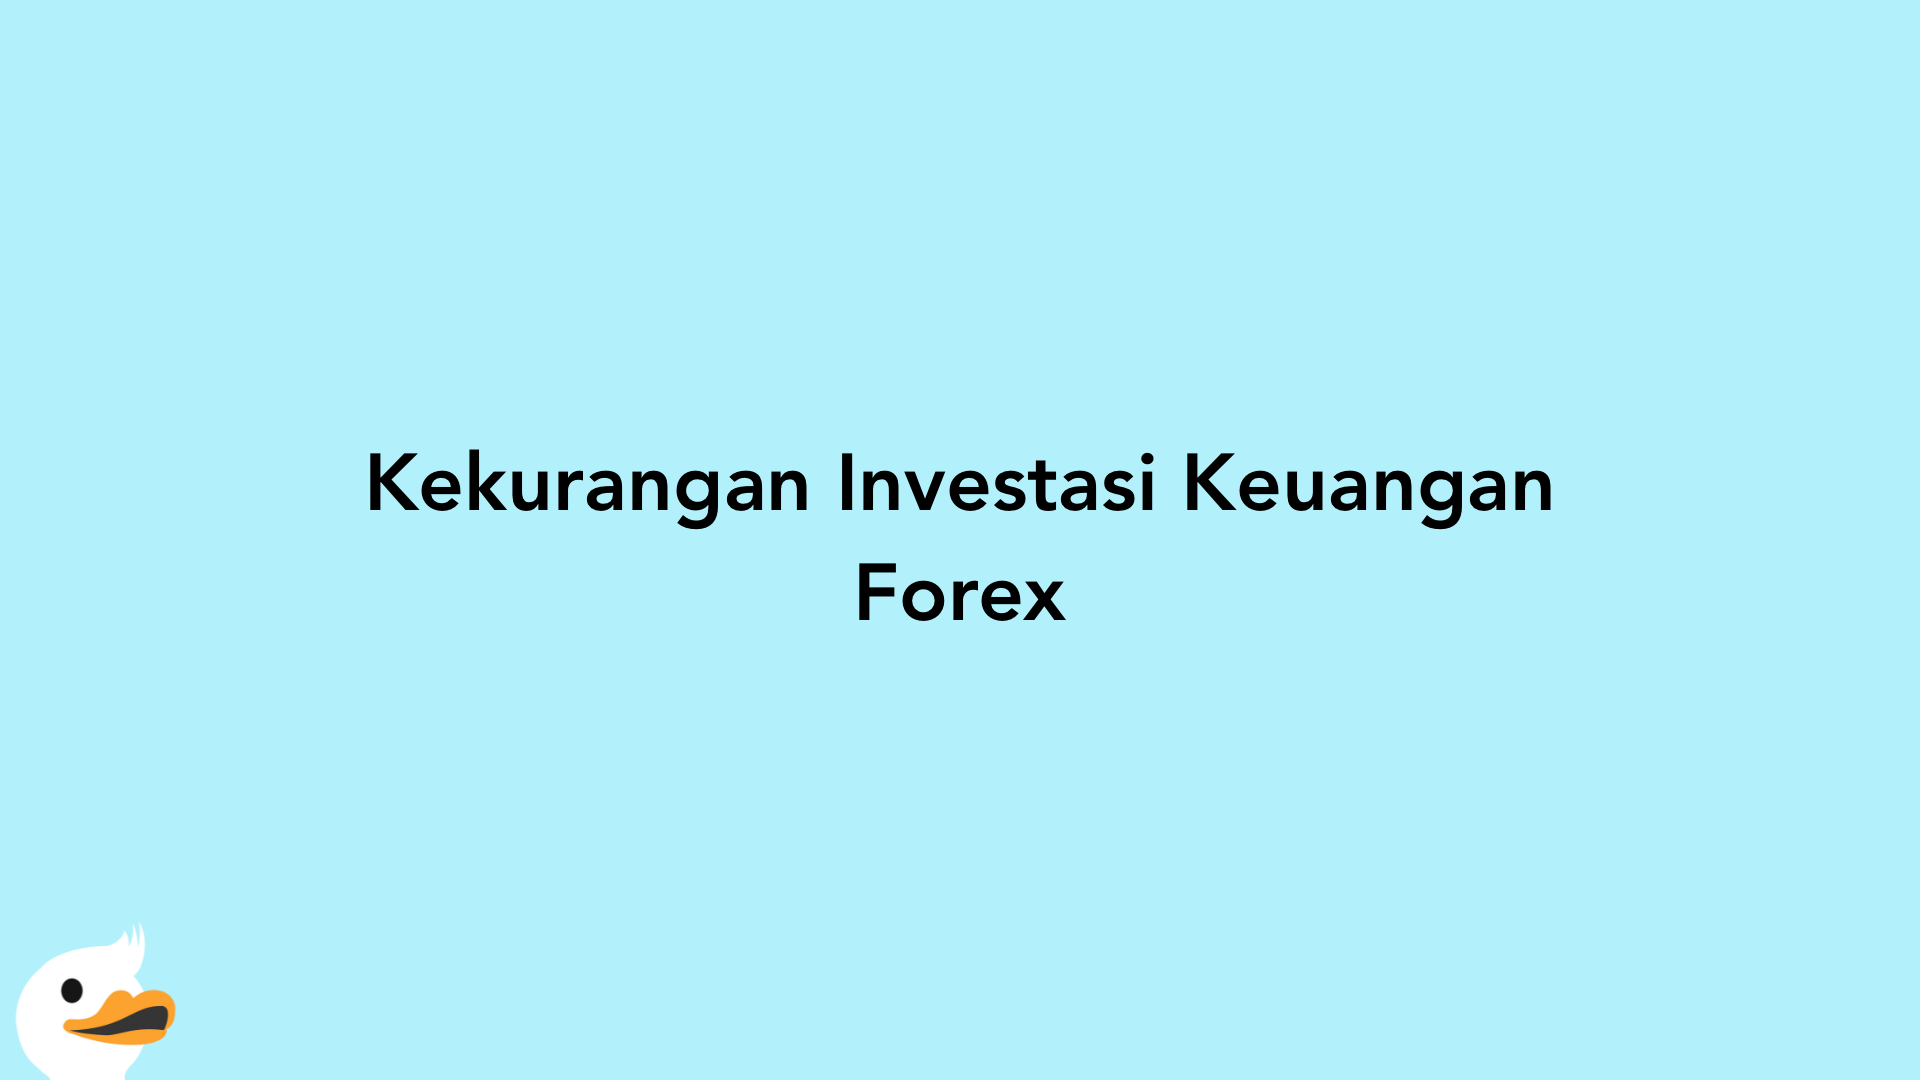 Kekurangan Investasi Keuangan Forex